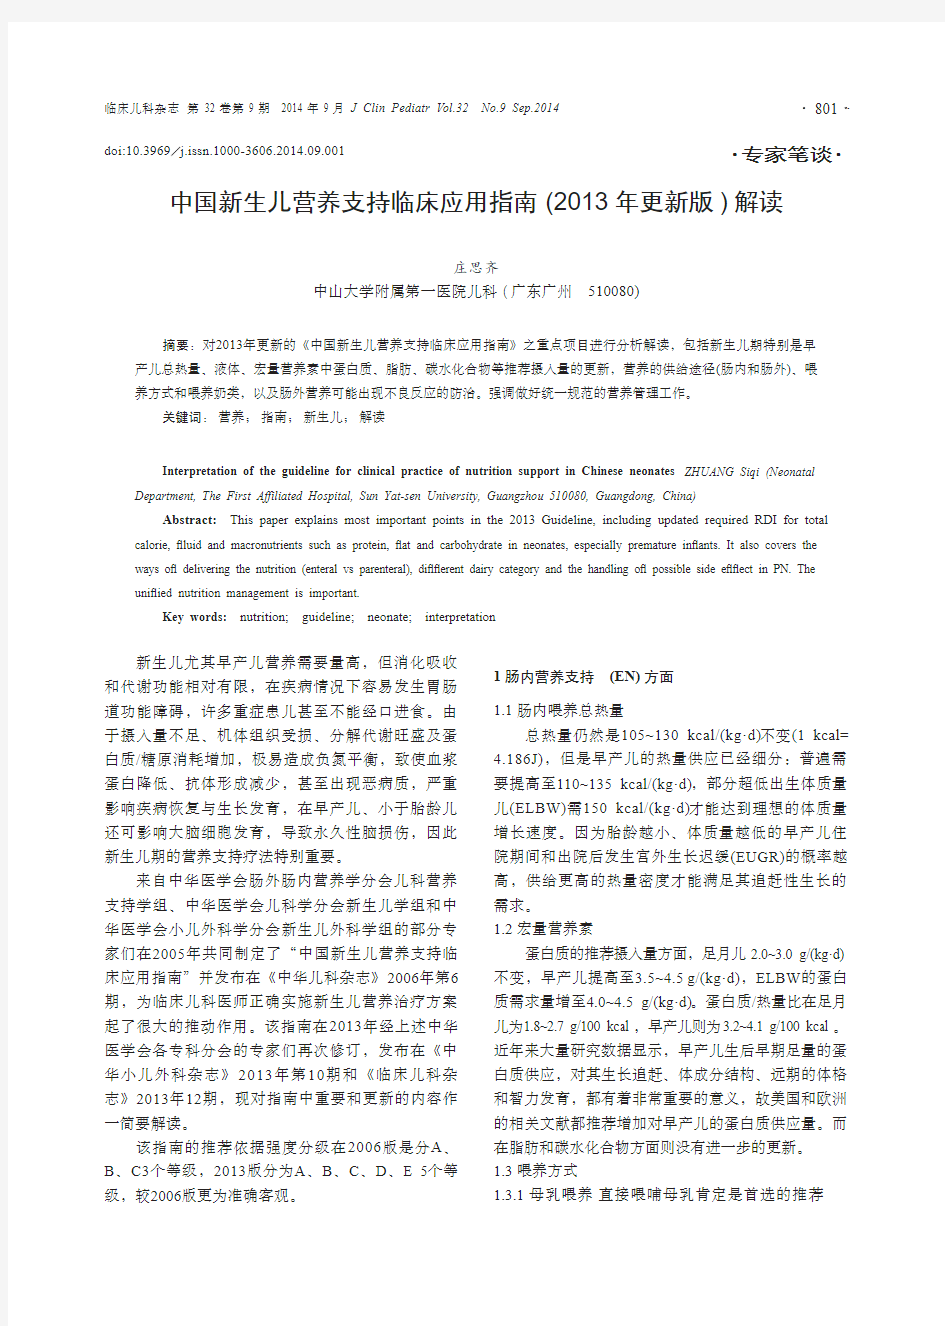 中国新生儿营养支持临床应用指南(2013年更新版)解读